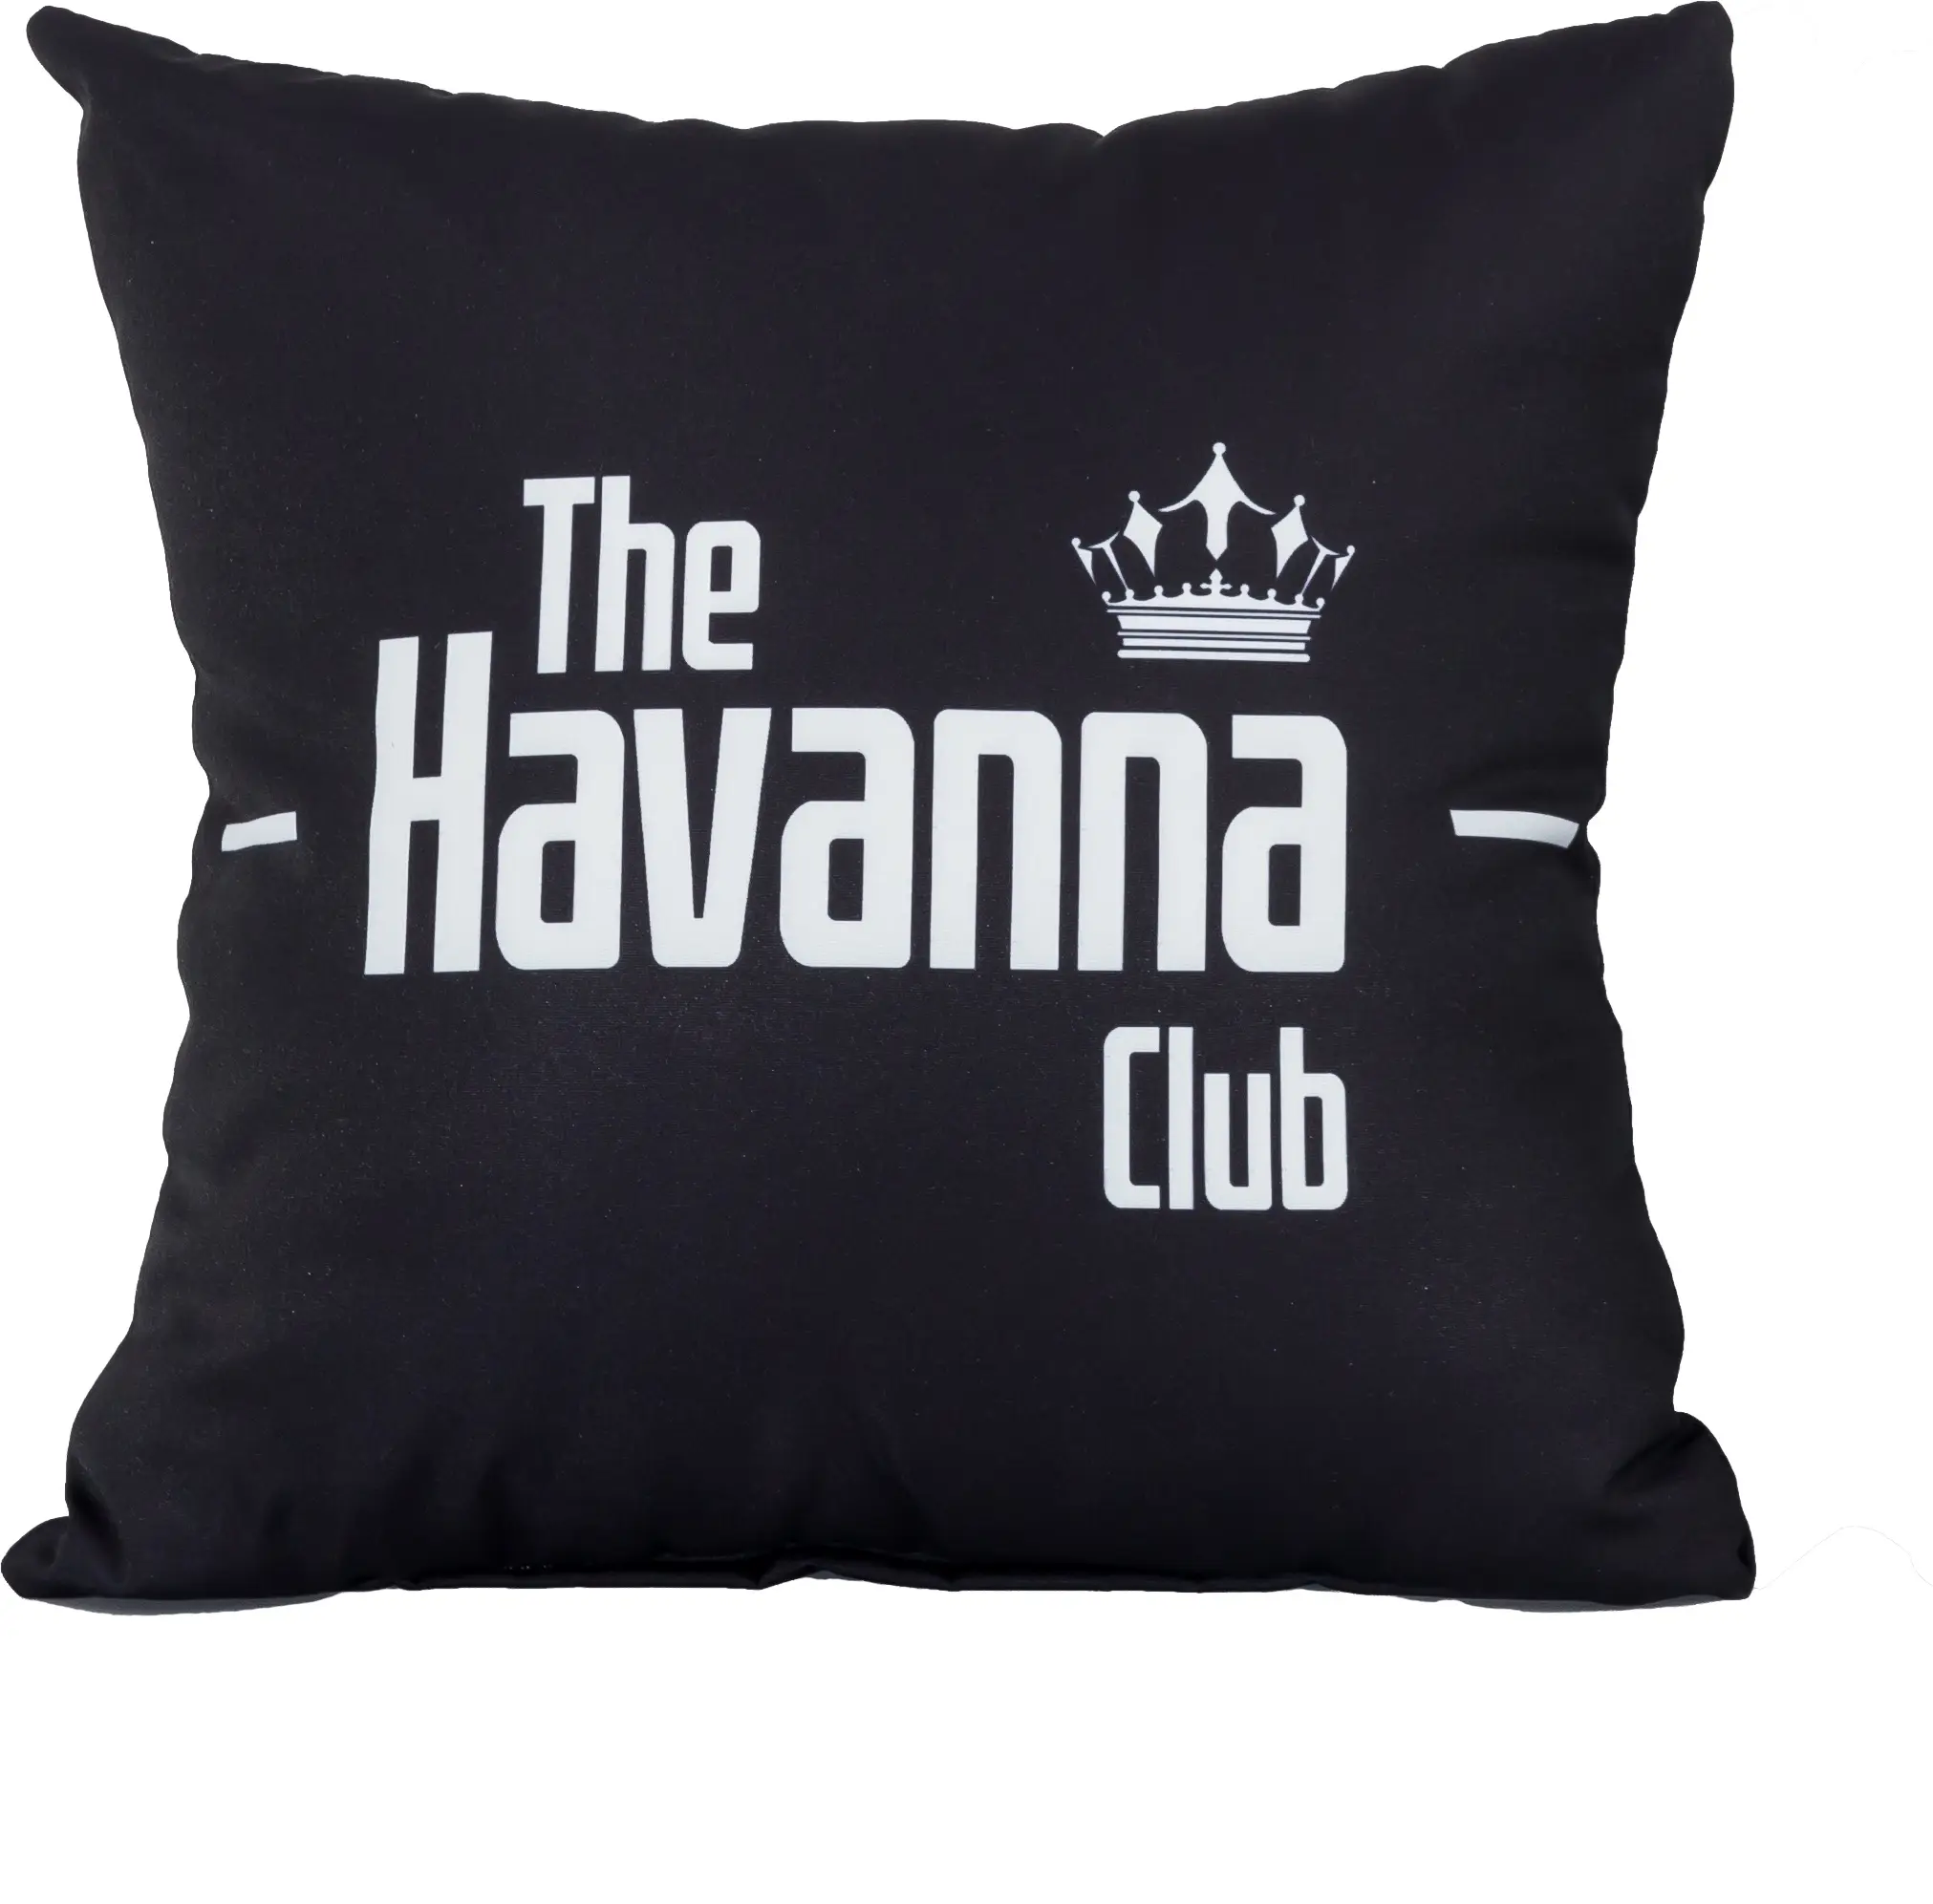 Kissenh眉lle The Havanna Club